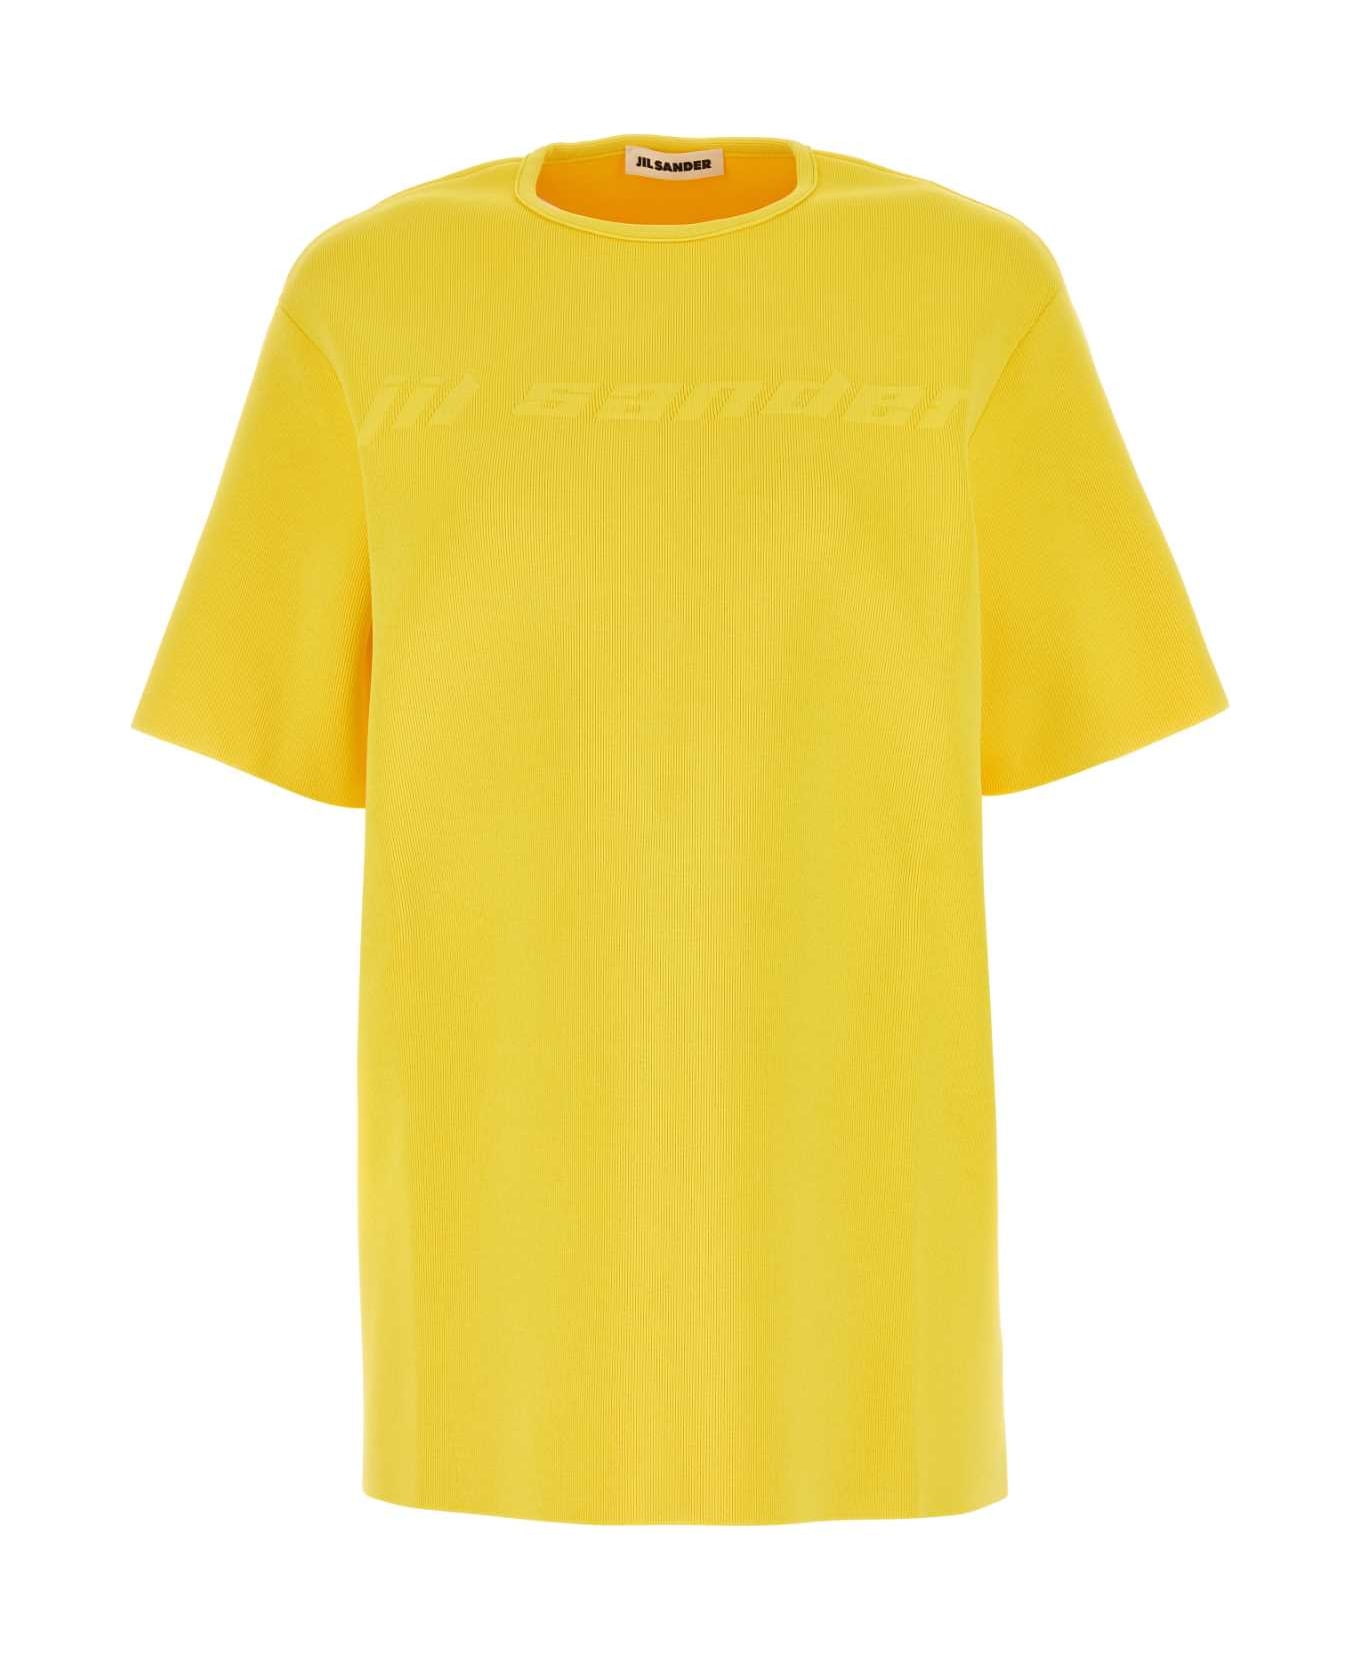 Jil Sander Yellow Viscose Blend T-shirt - 736